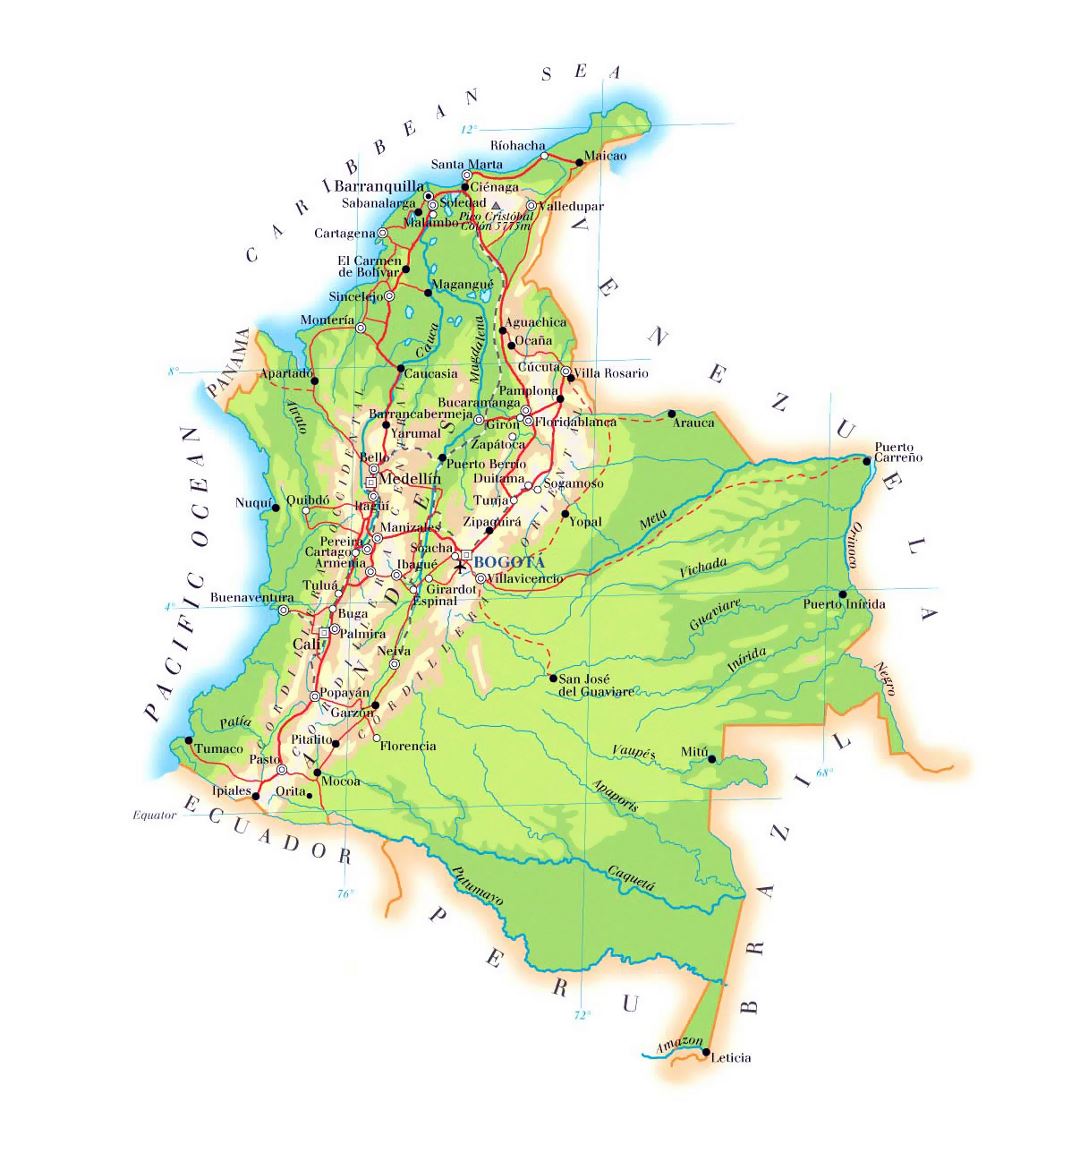 Большая карта высот Колумбии с дорогами, городами и аэропортами